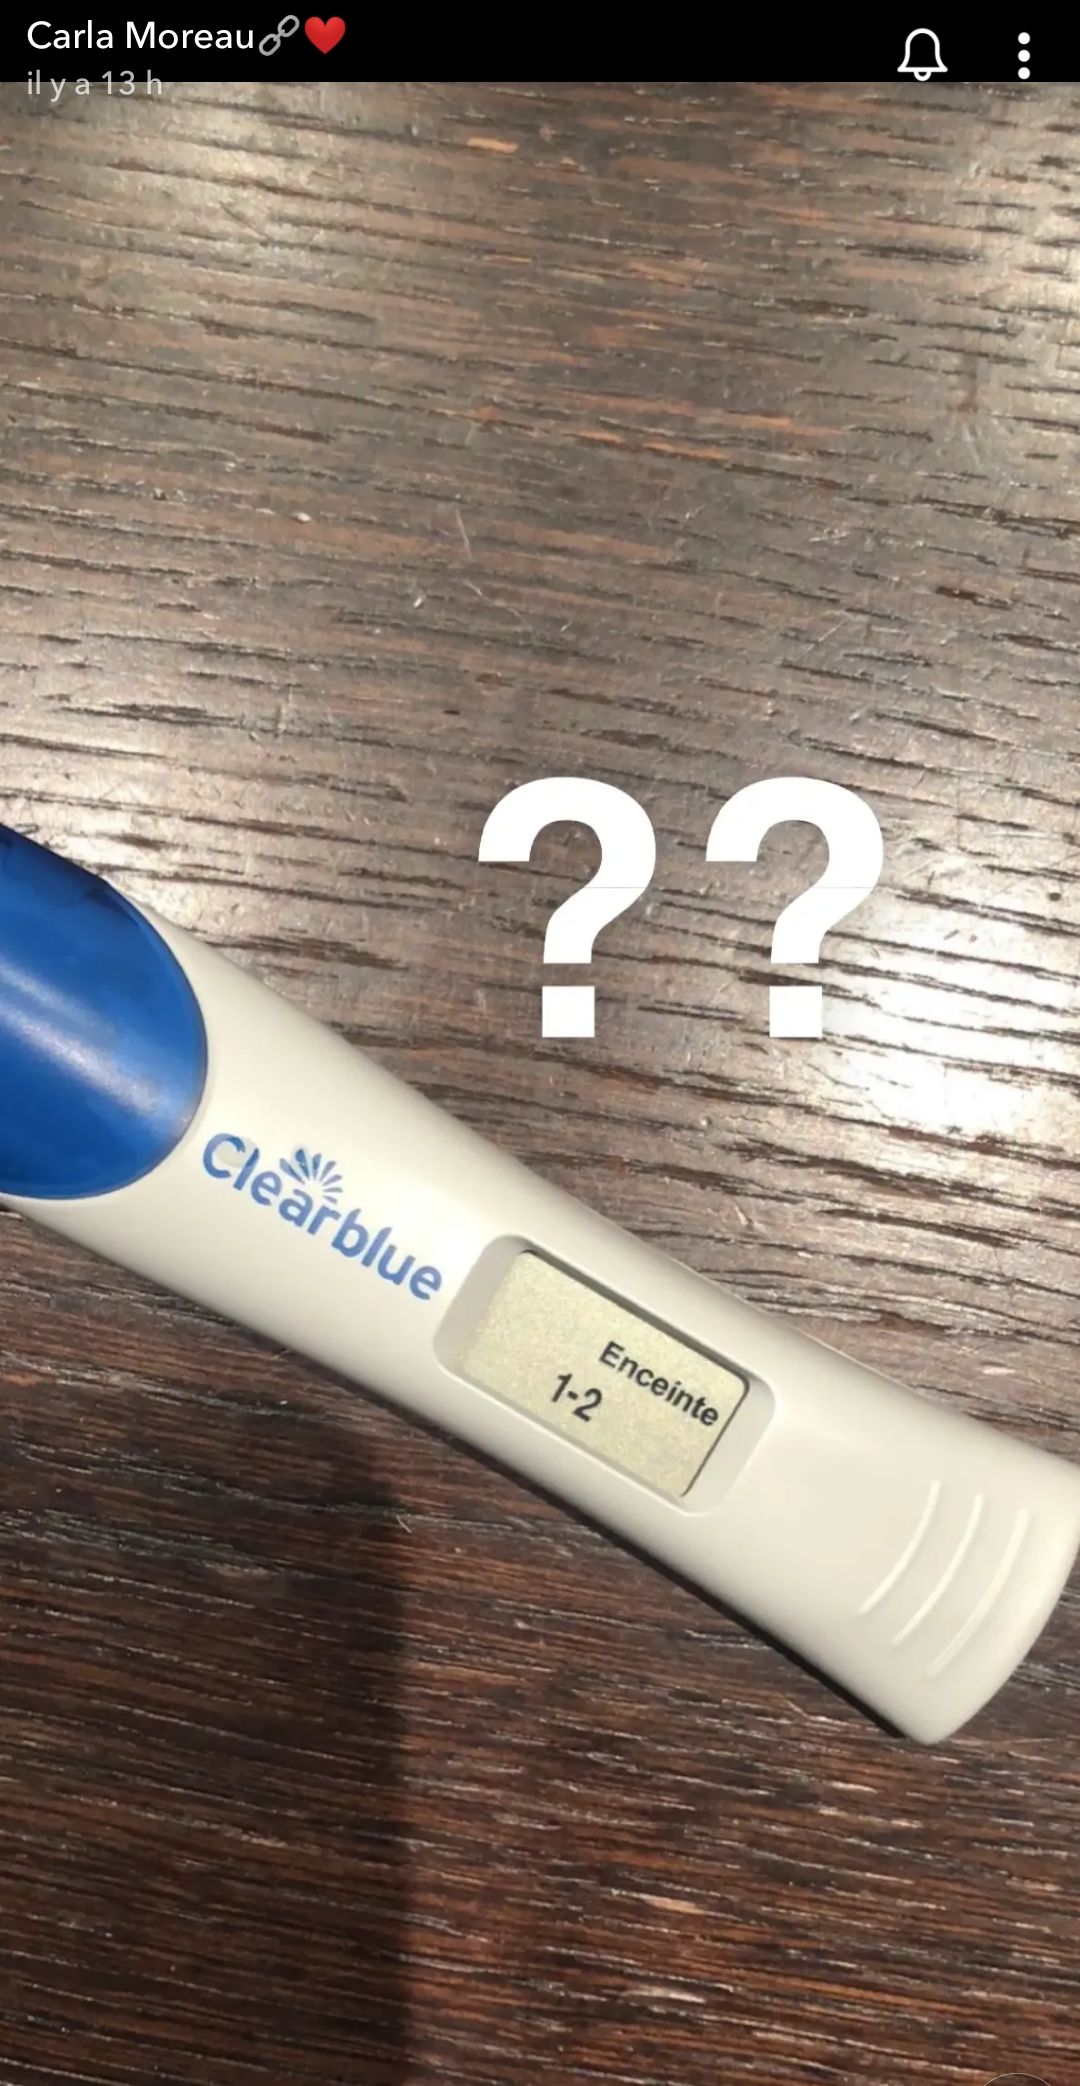 Carla Moreau enceinte de son deuxième enfant ? Elle dévoile un test de grossesse positif !